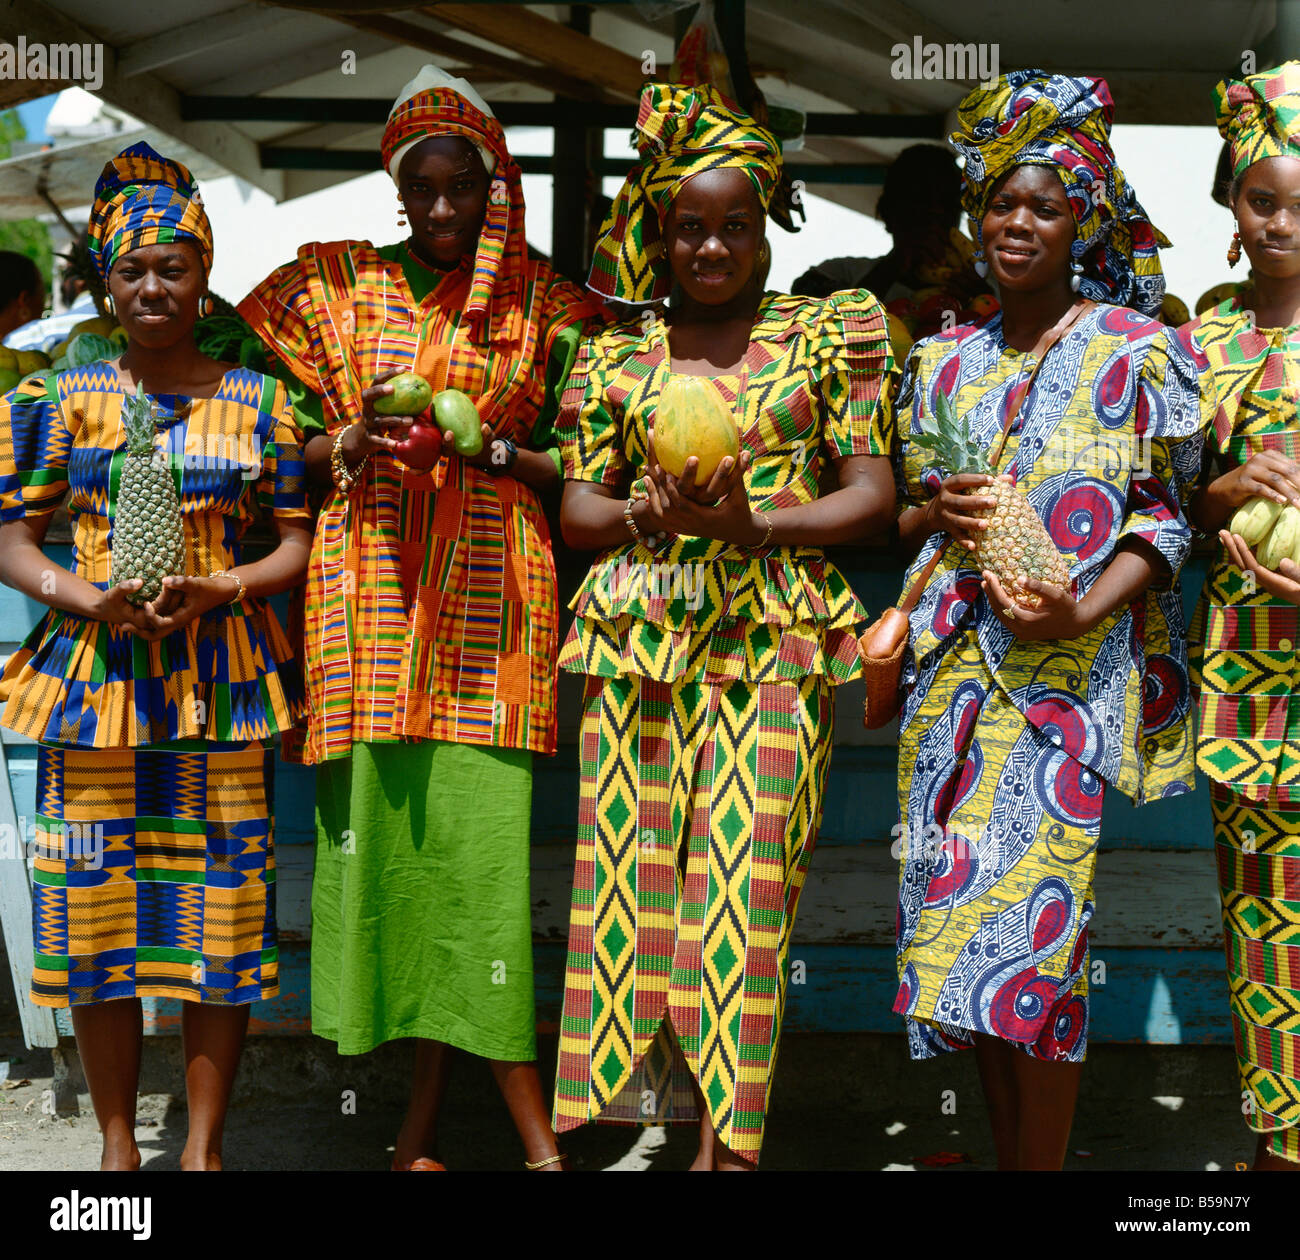 Les femmes en costume traditionnel, à la Barbade, Antilles, Caraïbes, Amérique Centrale Banque D'Images